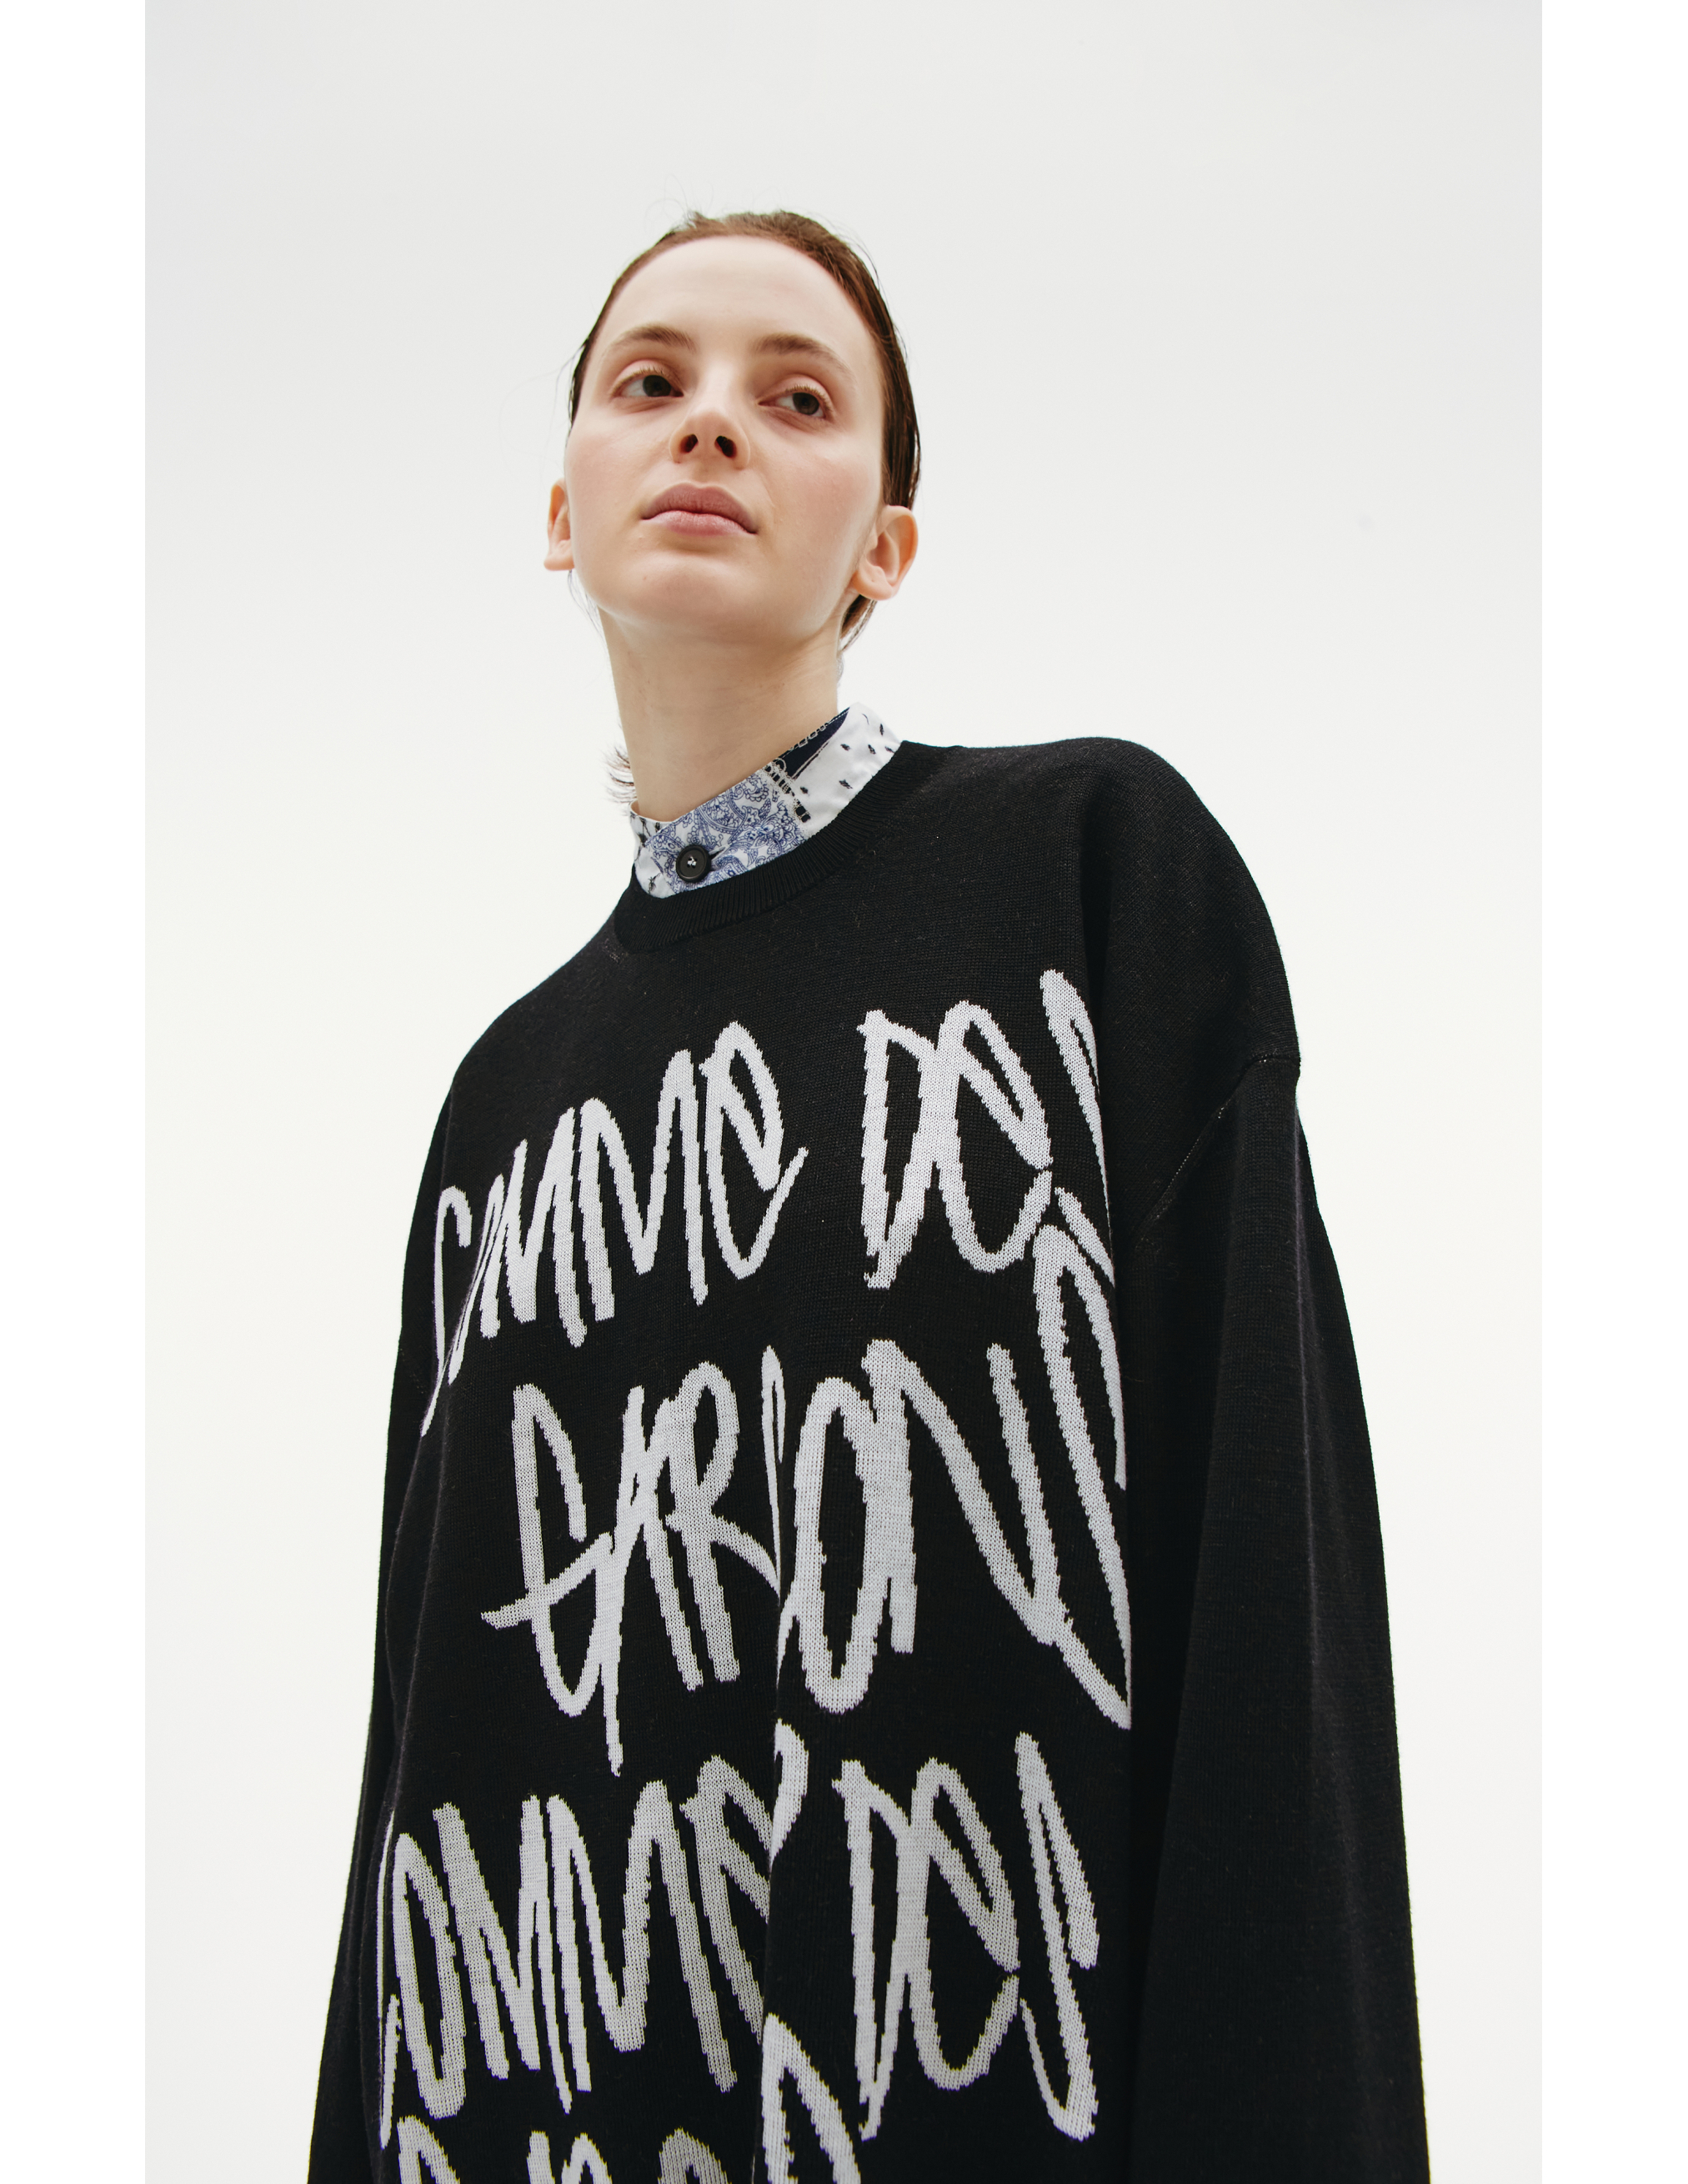 Шерстяной свитер с контрастным логотипом Comme des Garcons GI-N017-051-1, размер S;M - фото 5